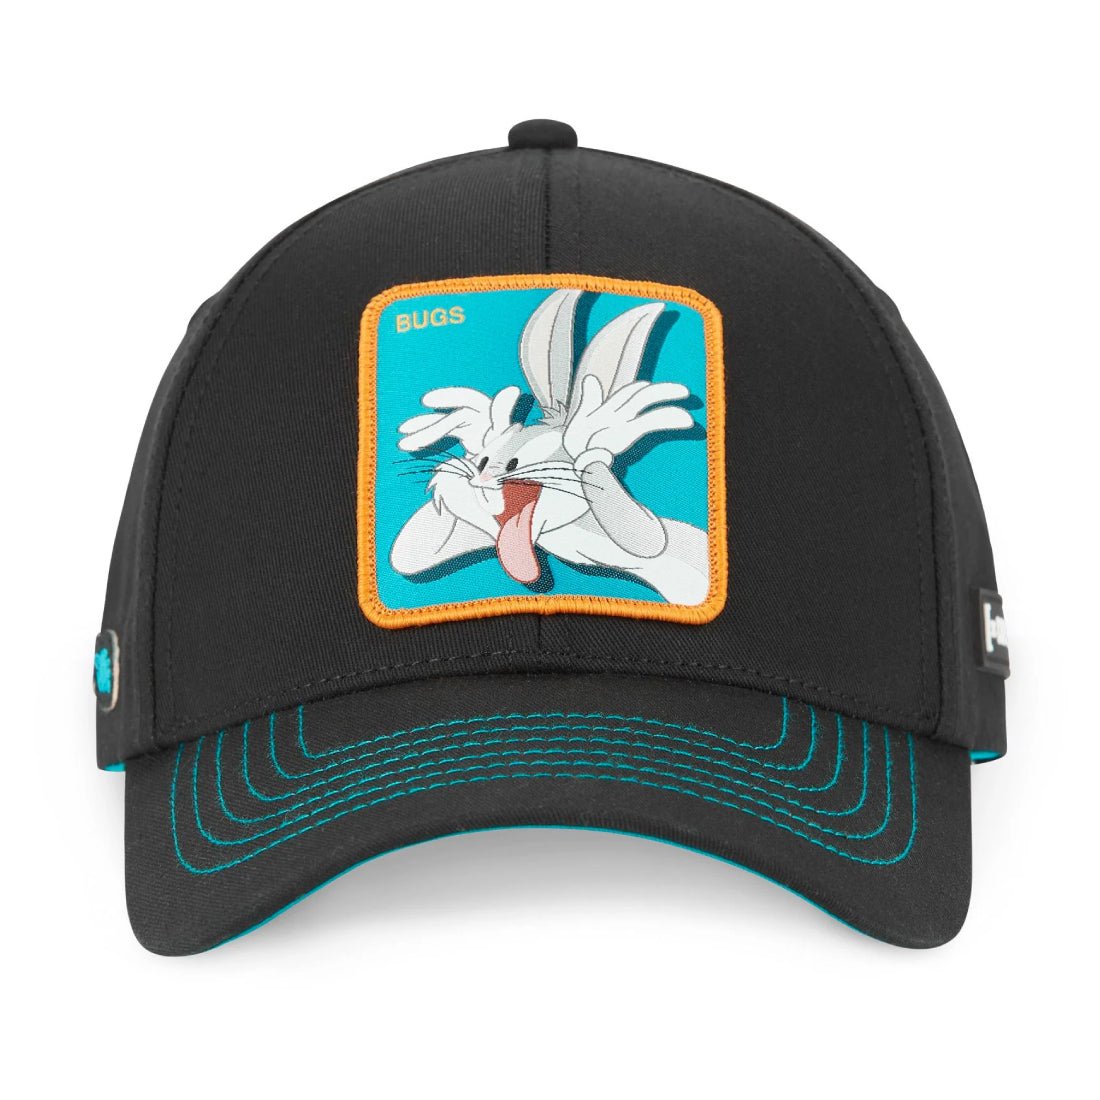 Queue Caps Bugs Bunny Cap - Black - قبعة - Store 974 | ستور ٩٧٤